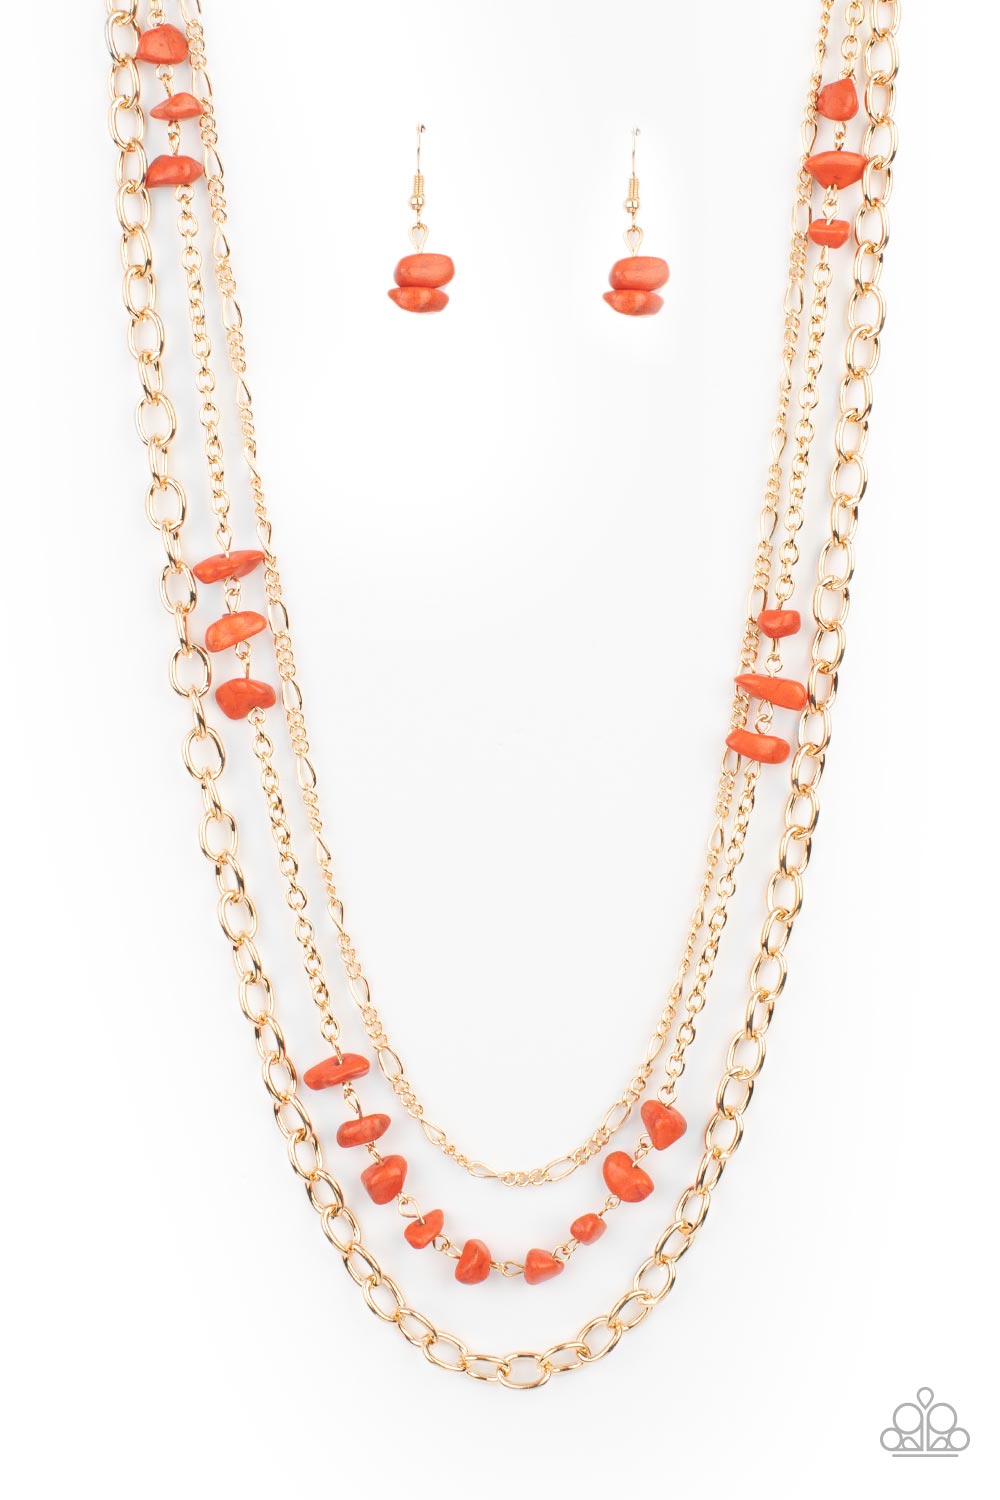 Artisanal Abundance - Orange Stone Necklace